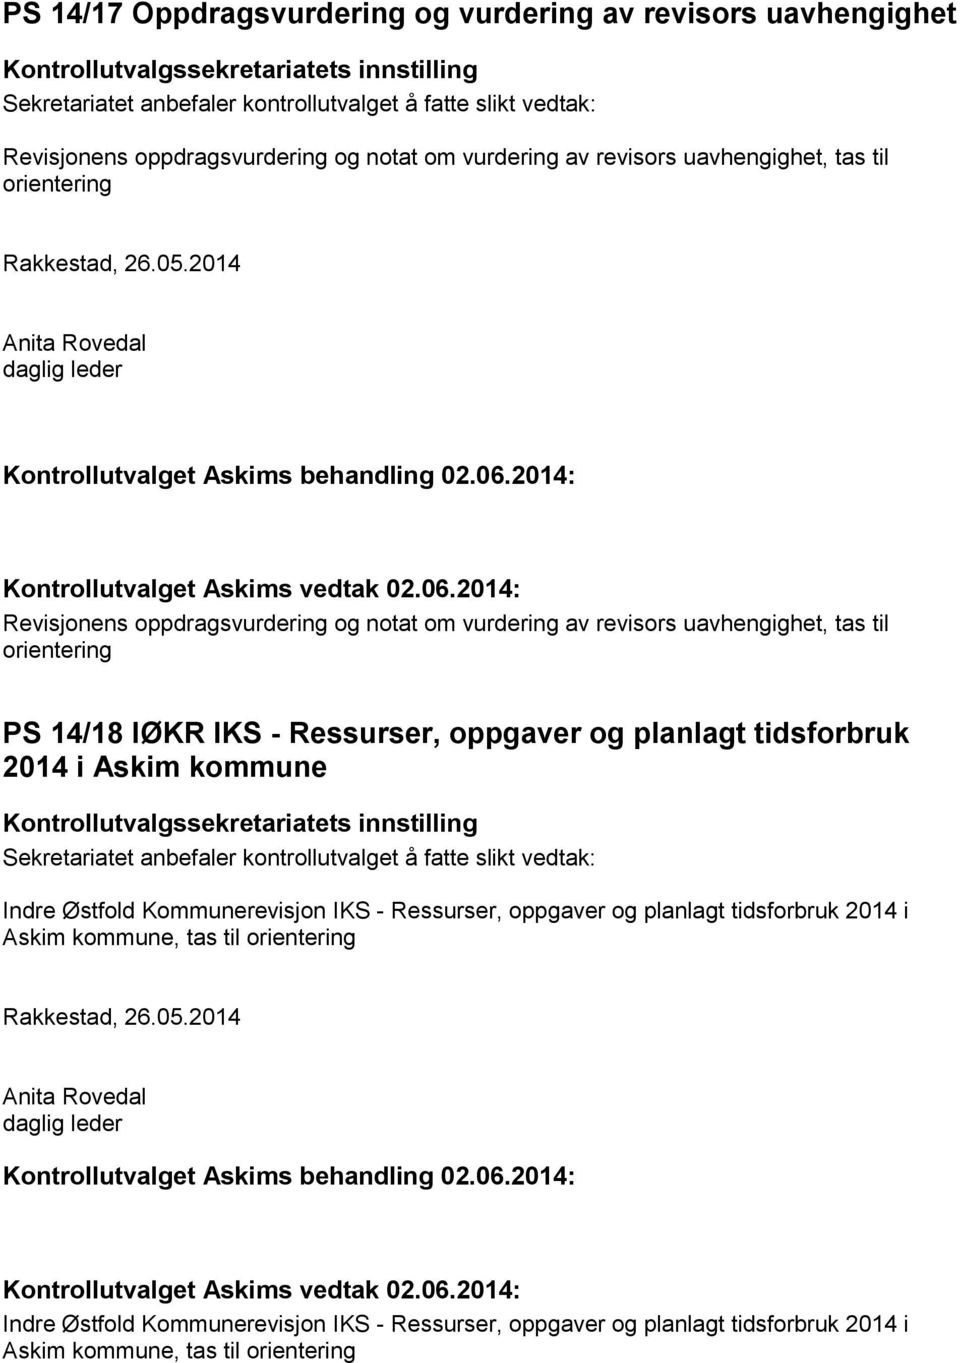 oppgaver og planlagt tidsforbruk 2014 i Askim kommune Indre Østfold Kommunerevisjon IKS - Ressurser, oppgaver og planlagt tidsforbruk 2014 i Askim